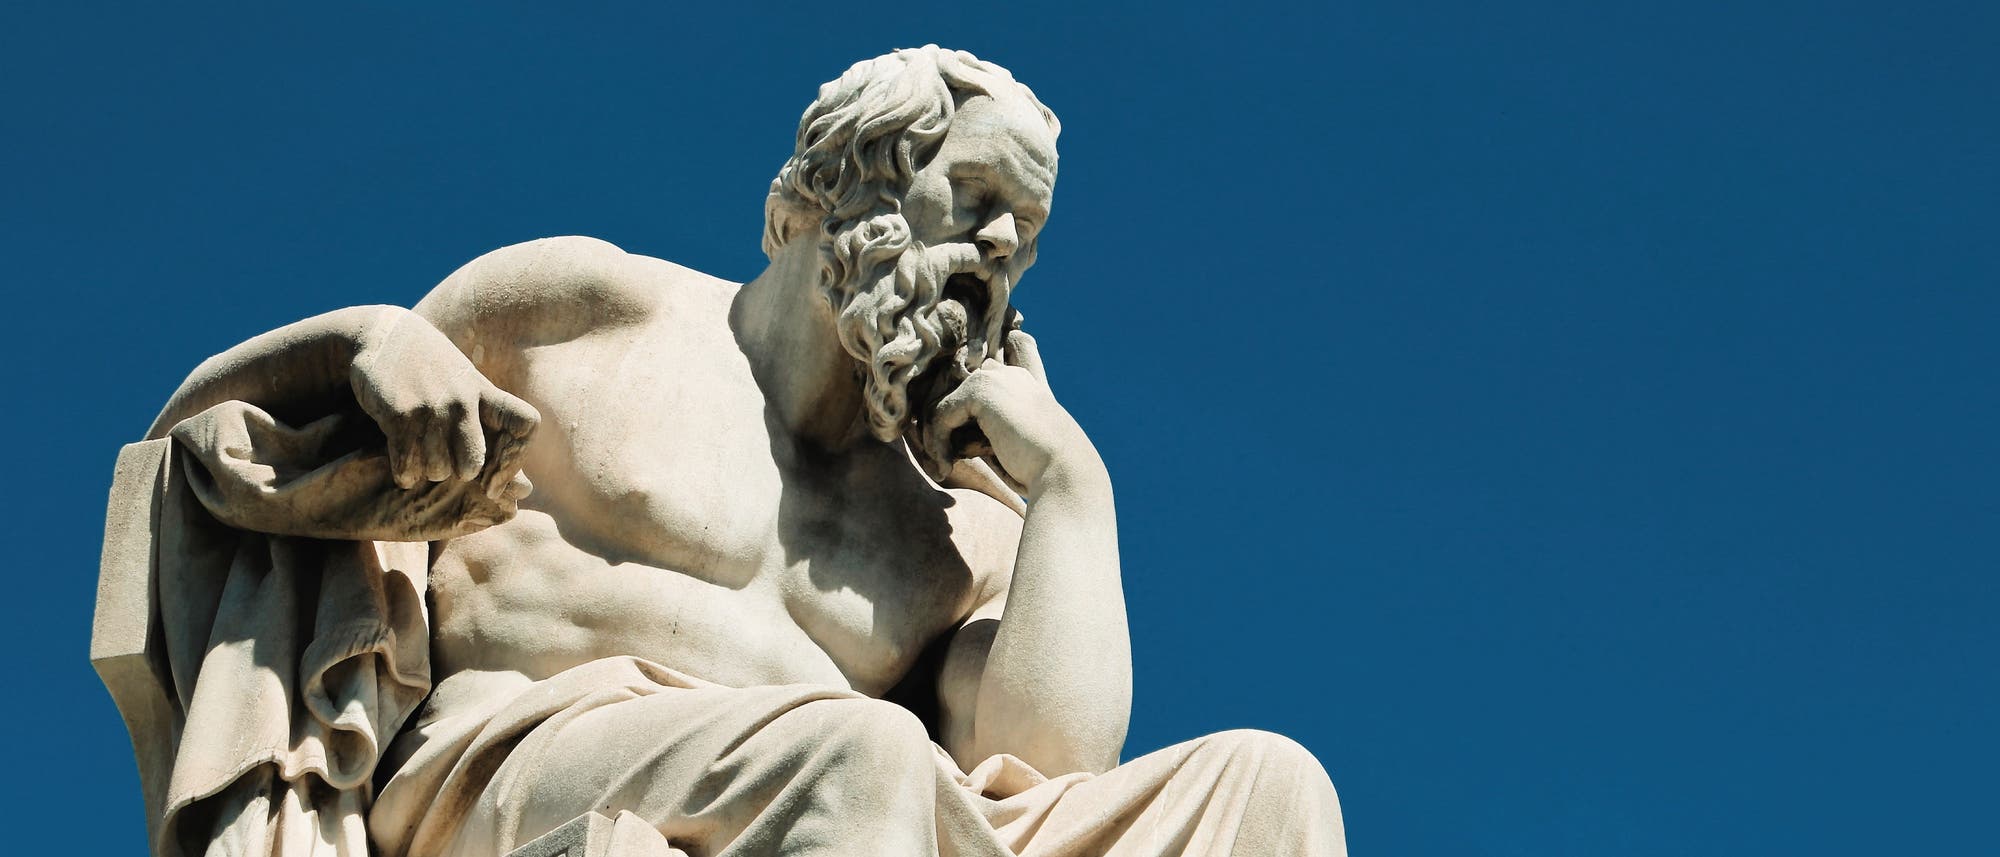 Statue des griechischen Philosophen Sokrates vor blauem Himmel